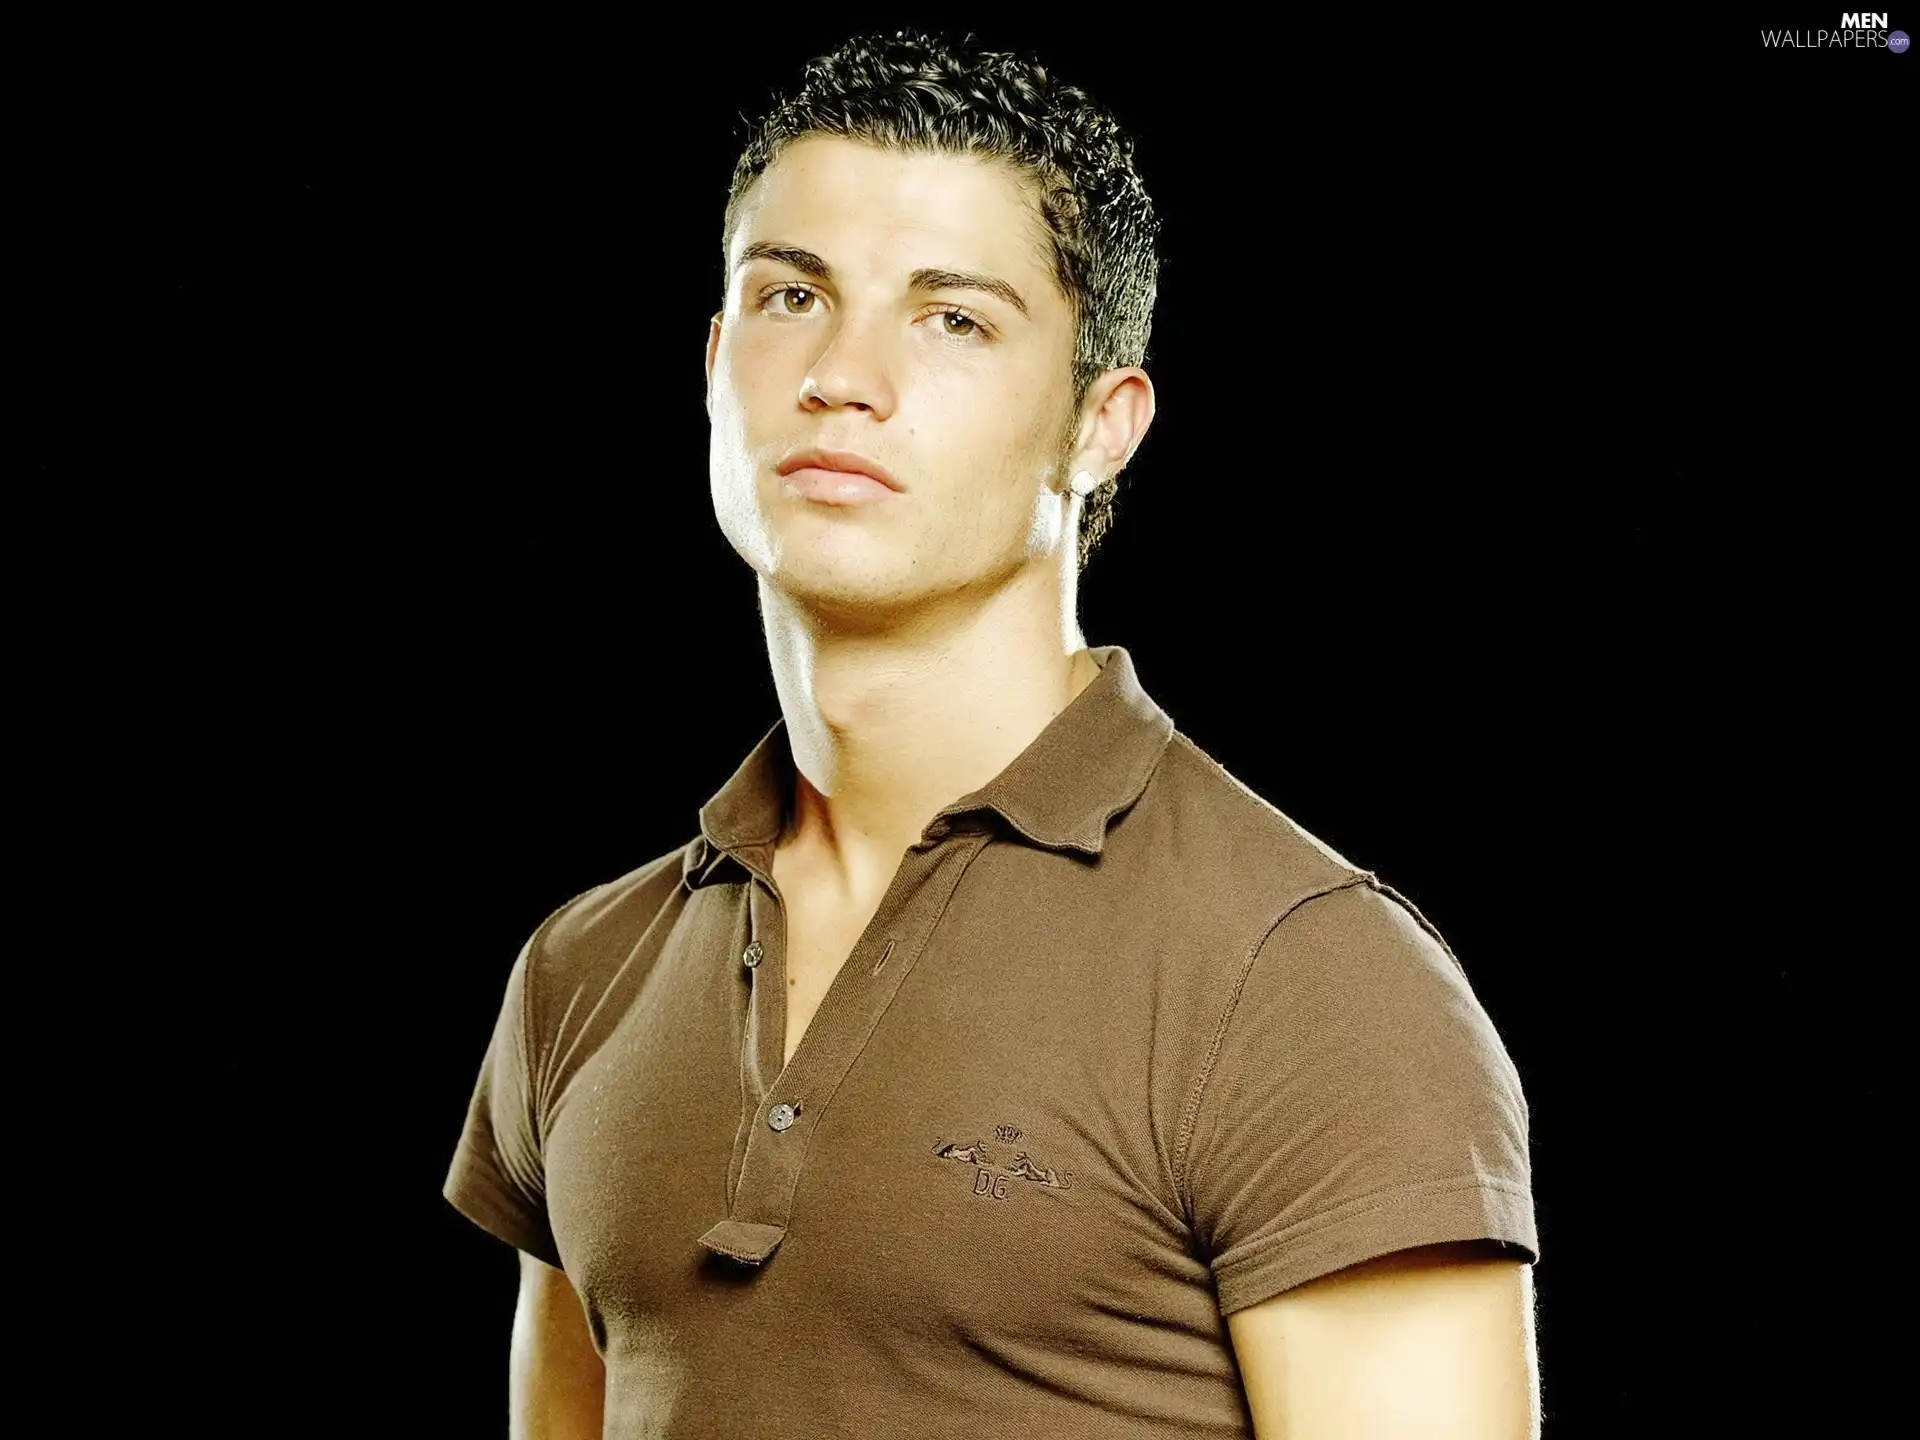 Cristiano Ronaldo, footballer